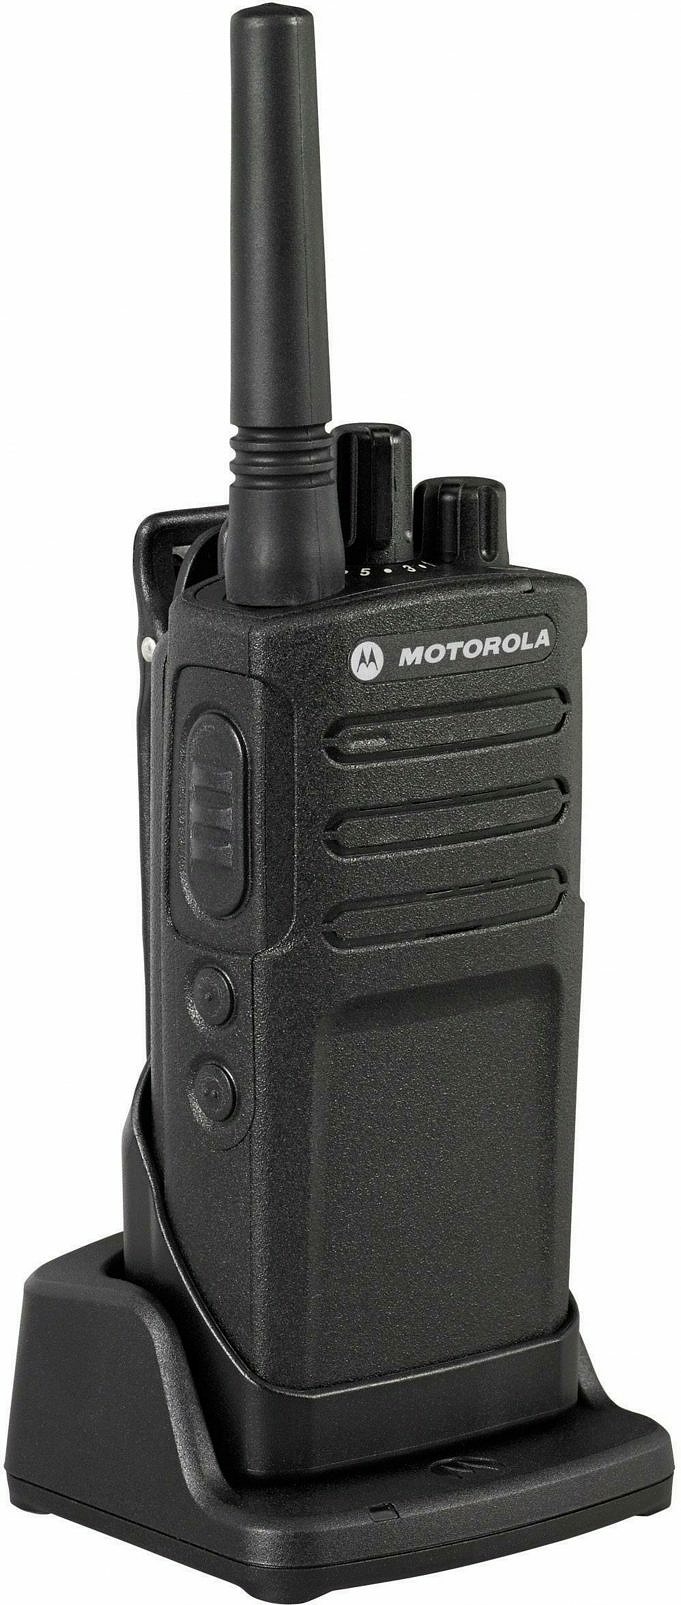 Radio Motorola XT420